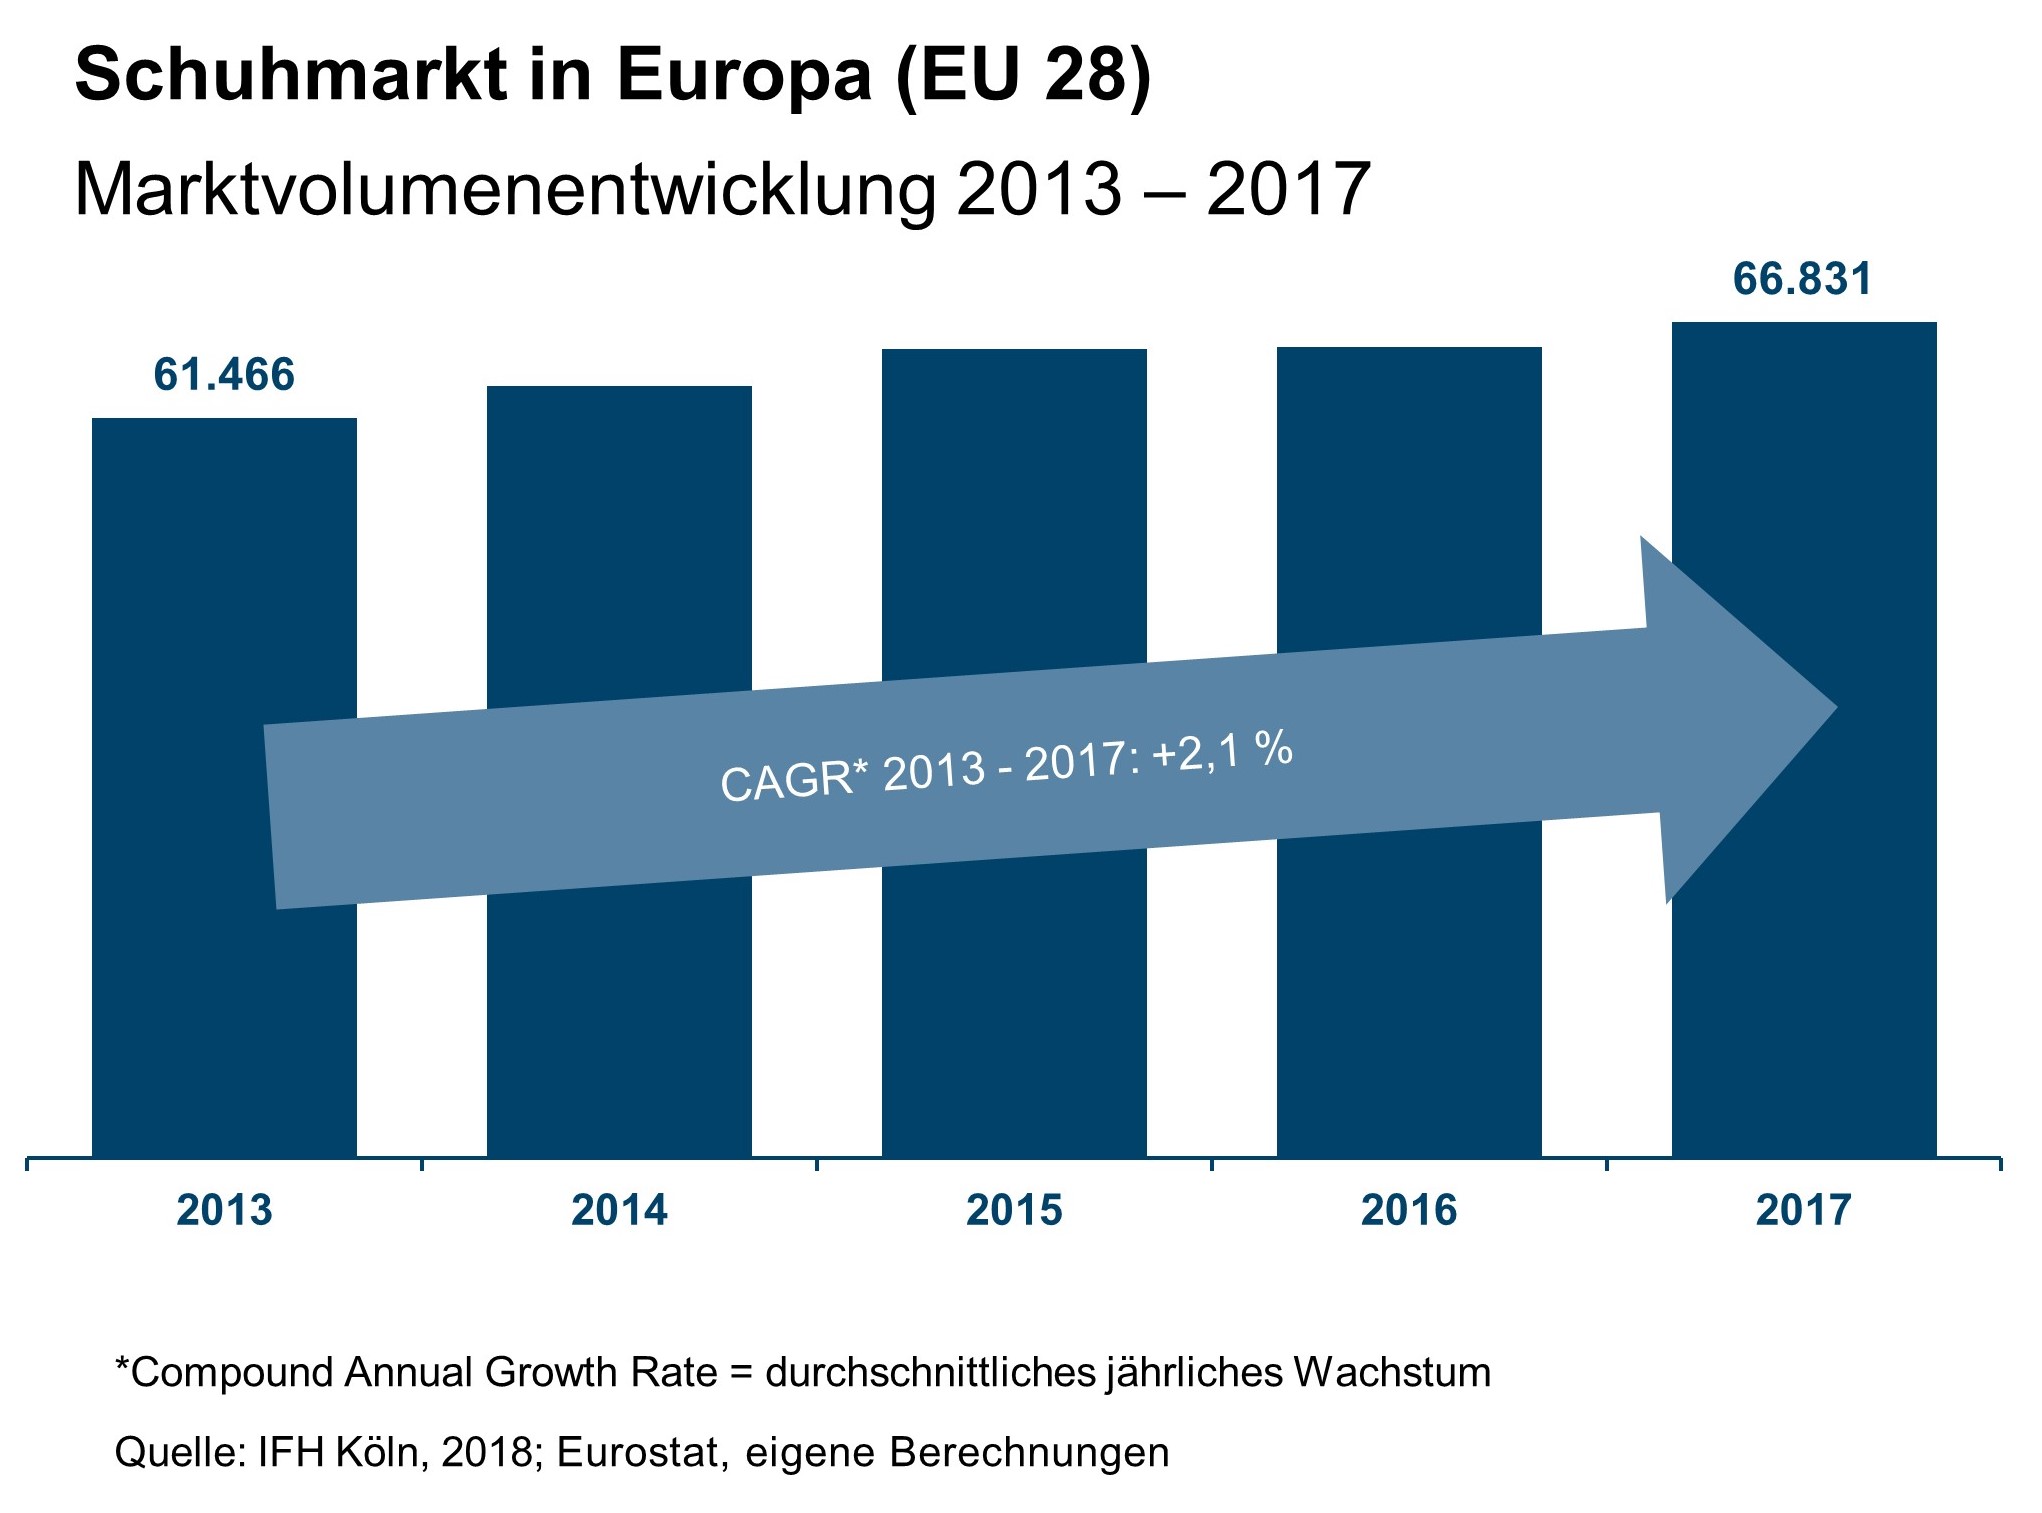 Schuhmarkt in Europa: Marktvolumen 2013-2017